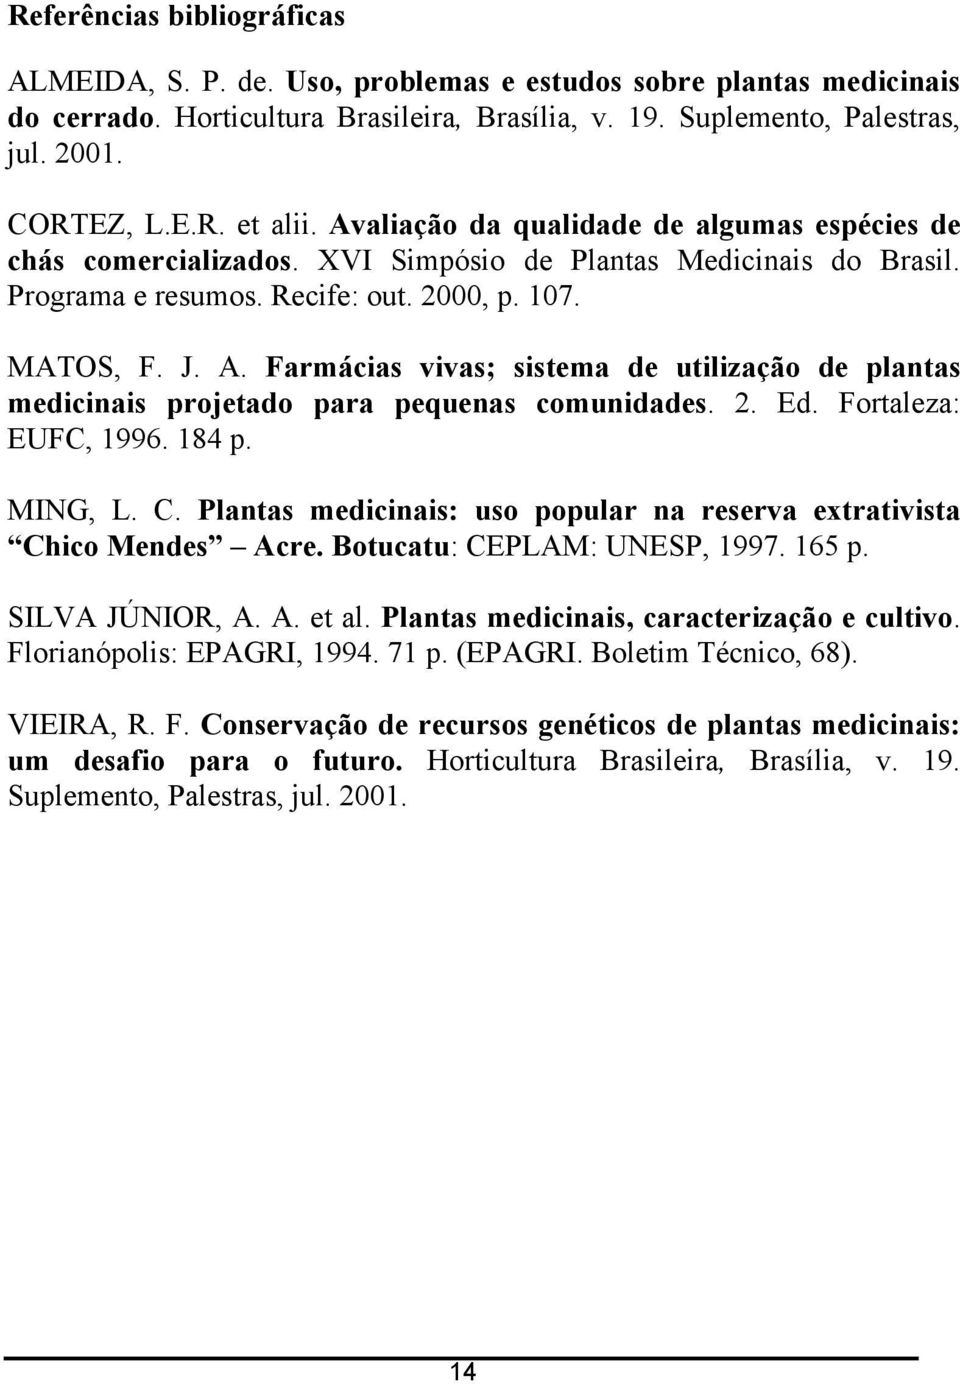 Farmácias vivas; sisema de uilização de planas medicinais projeado para pequenas comunidades.. Ed. Foraleza: EUFC, 1996. 184 p. MING, L. C.